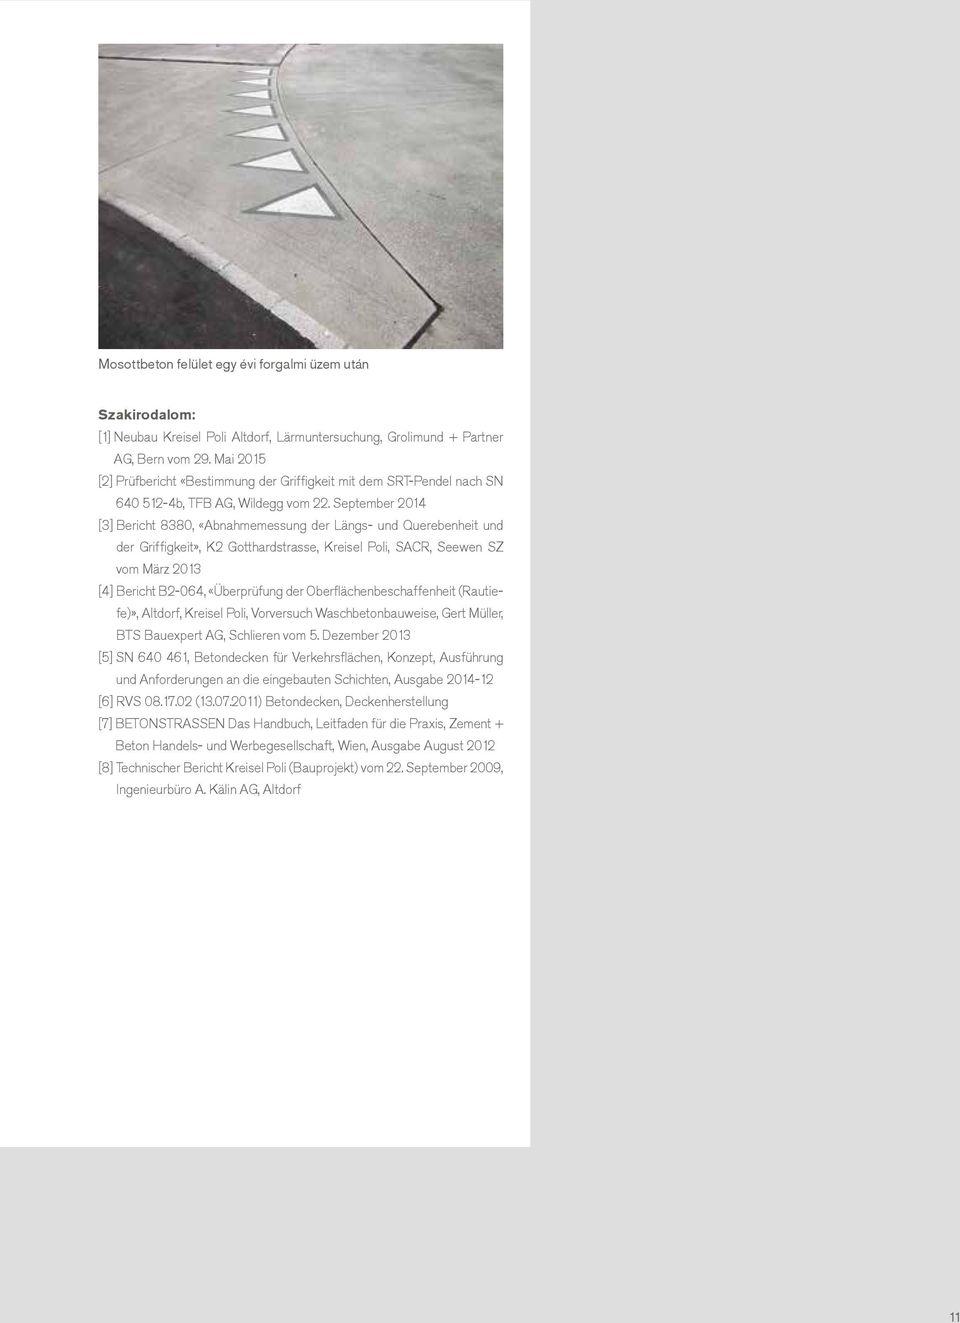 September 2014 [3] Bericht 8380, «Abnahmemessung der Längs- und Querebenheit und der Griffigkeit», K2 Gotthardstrasse, Kreisel Poli, SACR, Seewen SZ vom März 2013 [4] Bericht B2-064, «Überprüfung der